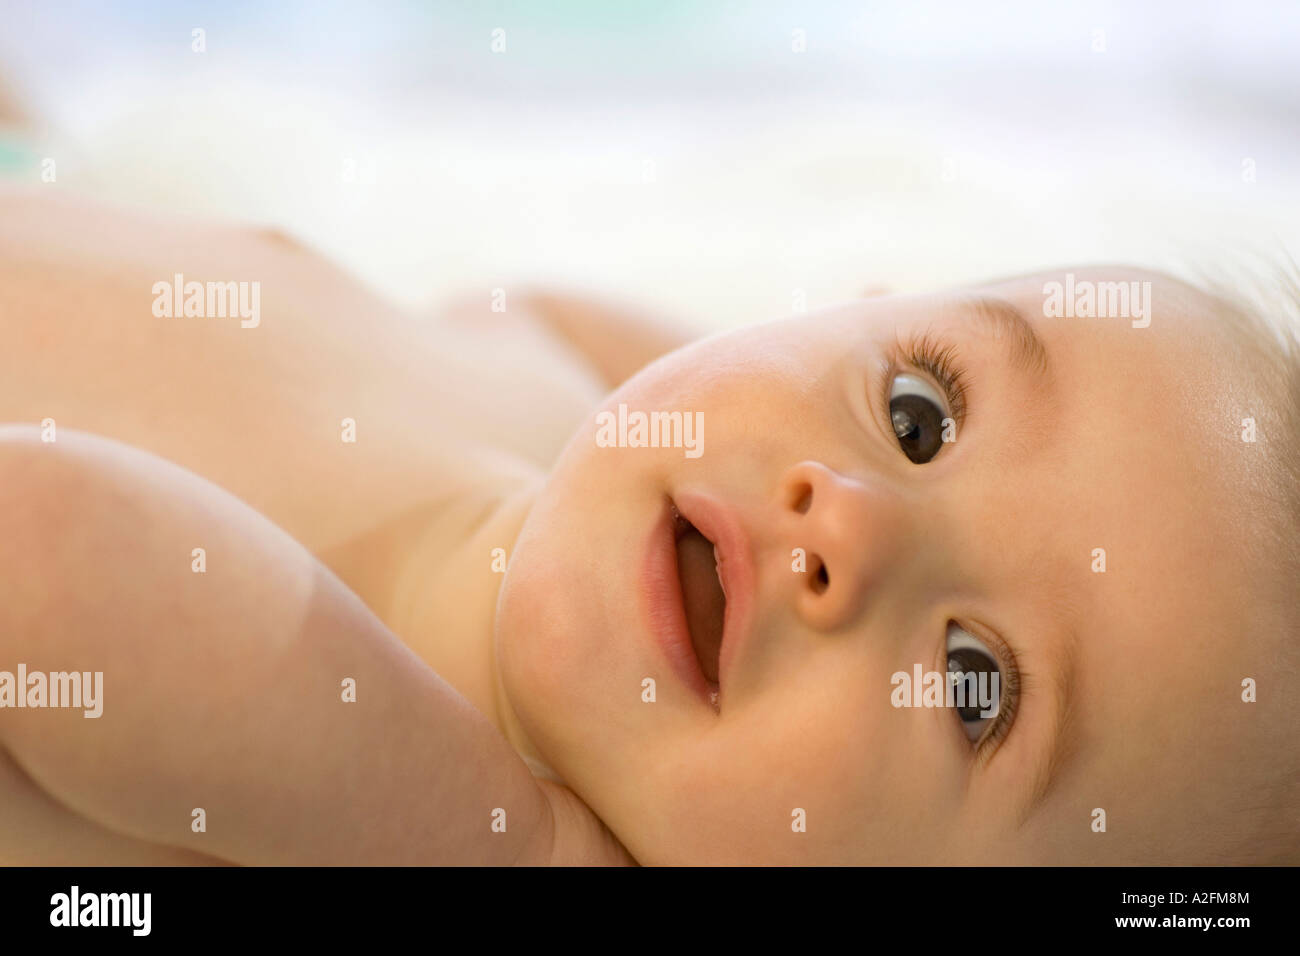 Bébé garçon (6-12 mois) allongé sur le dos, close-up Banque D'Images